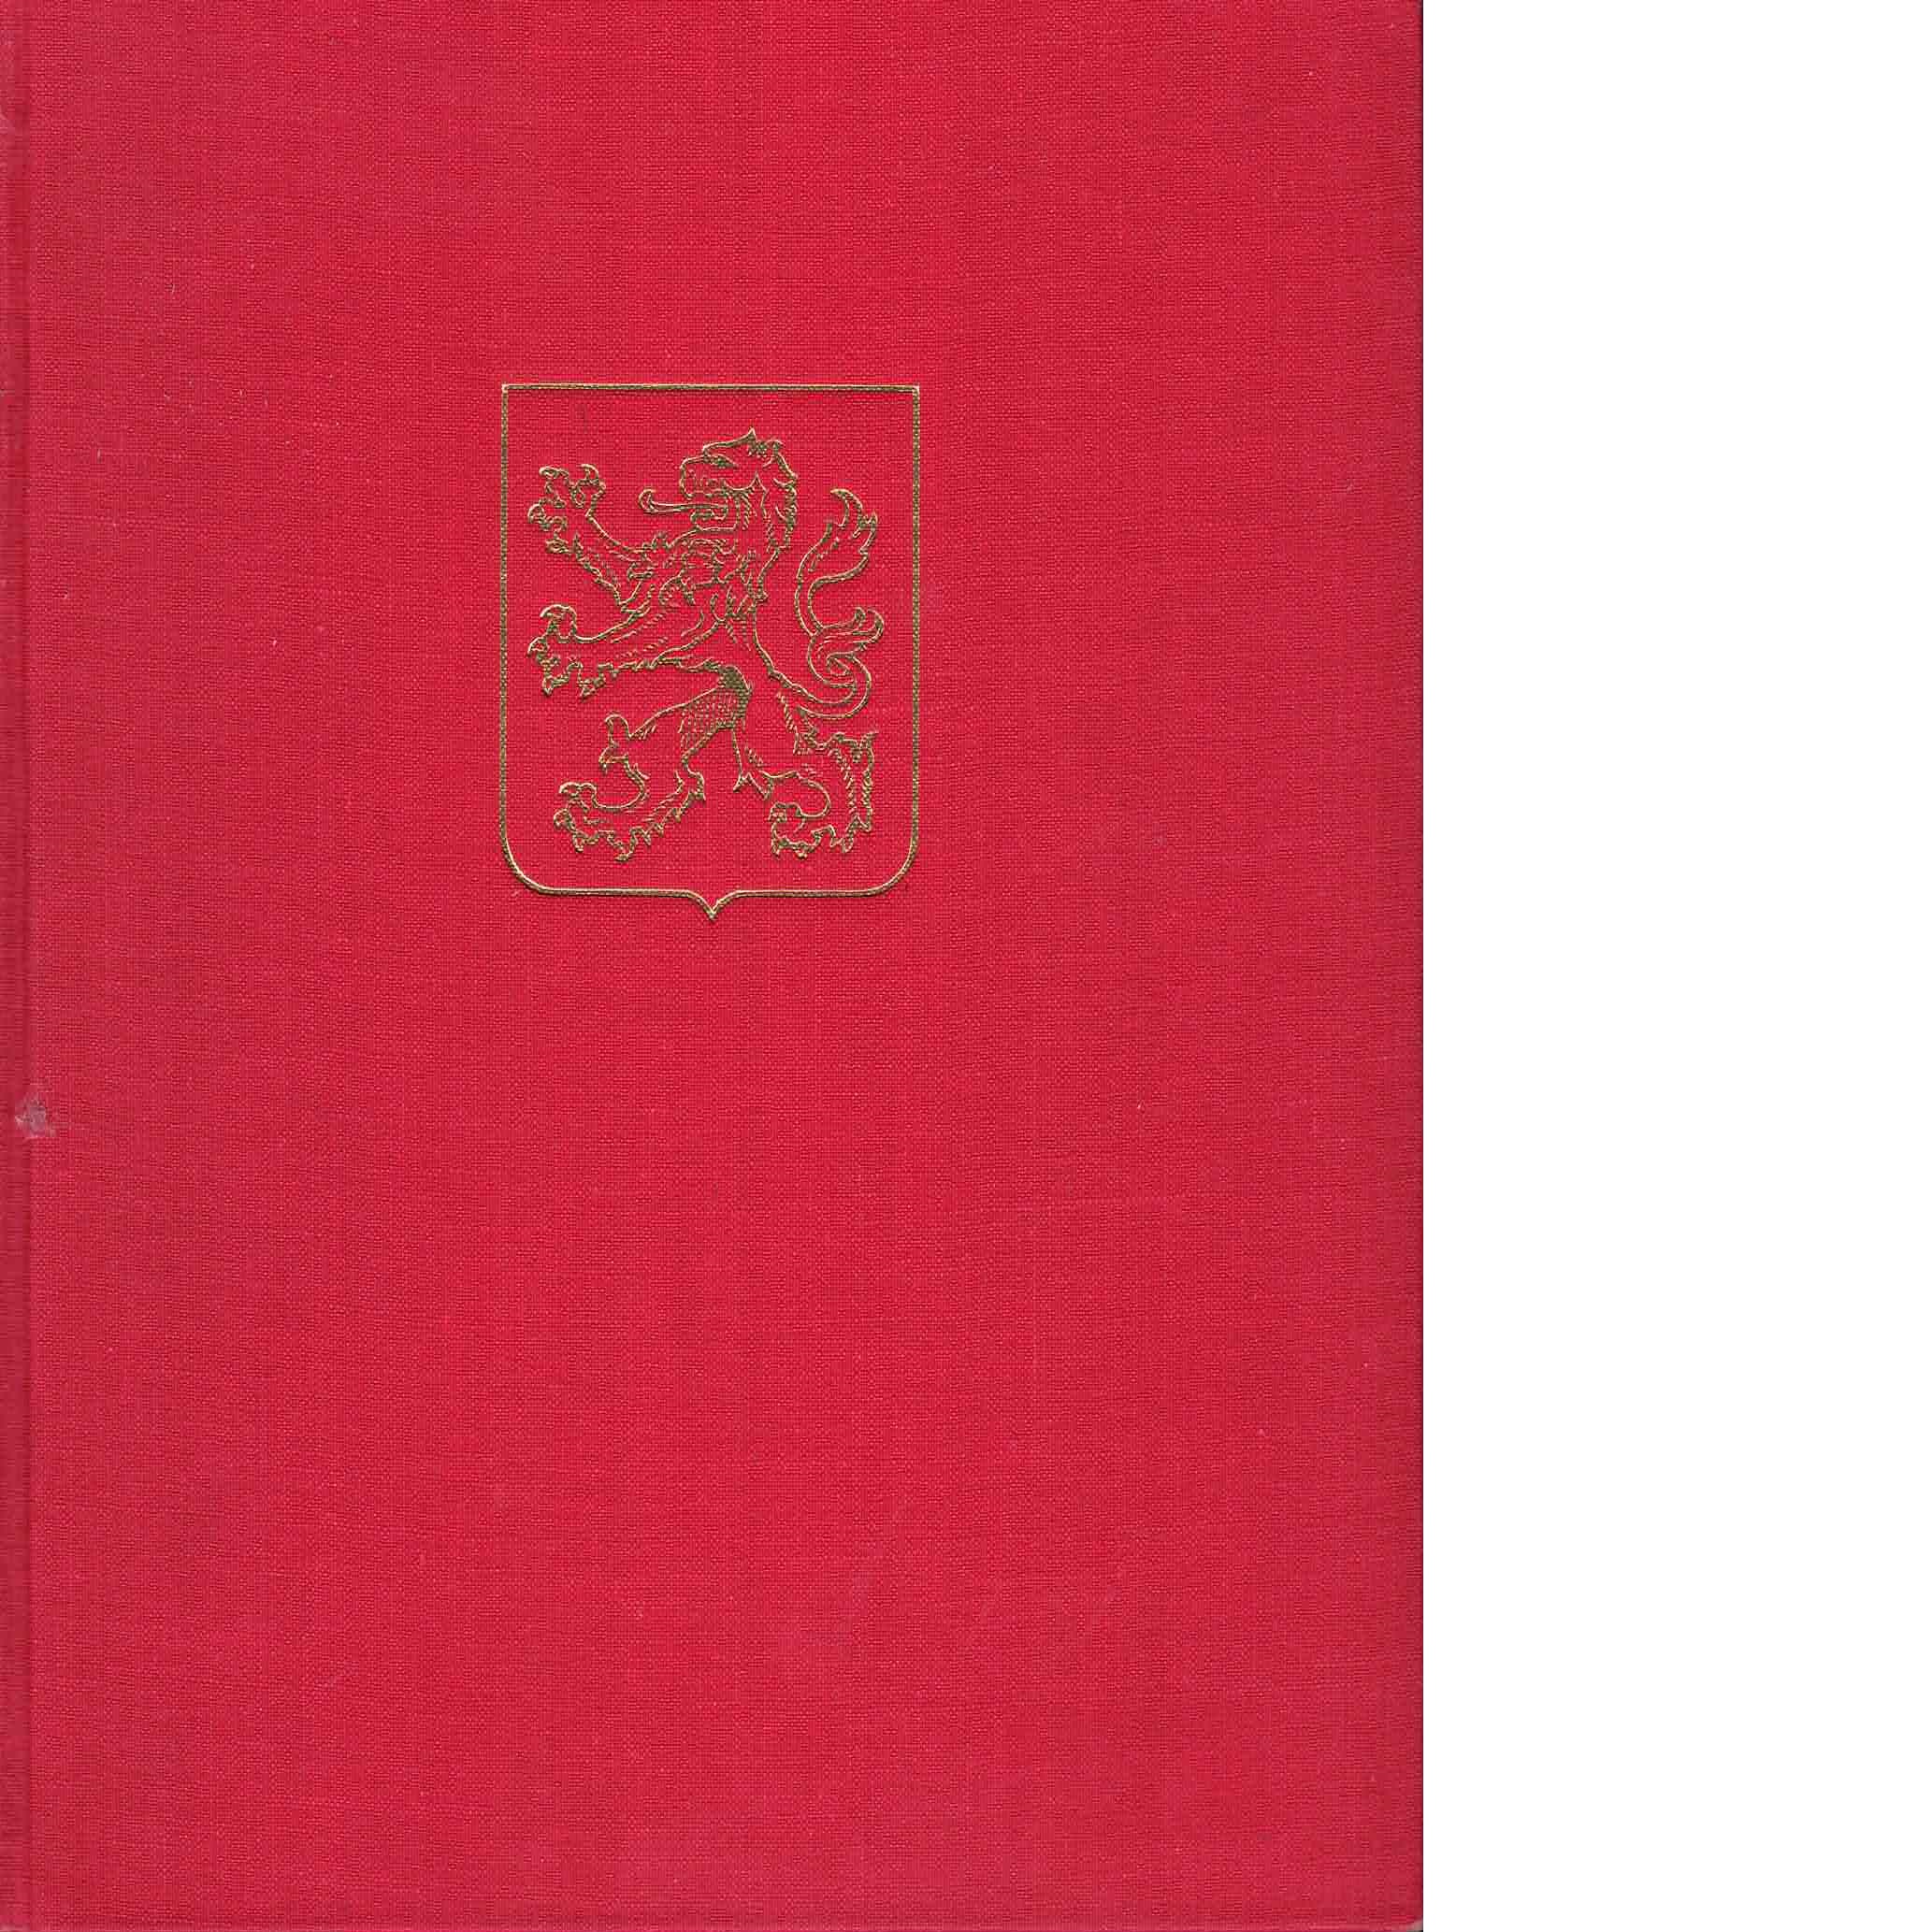 En bildbok om Halland - Nuet och hävderna - Olsson, Albert